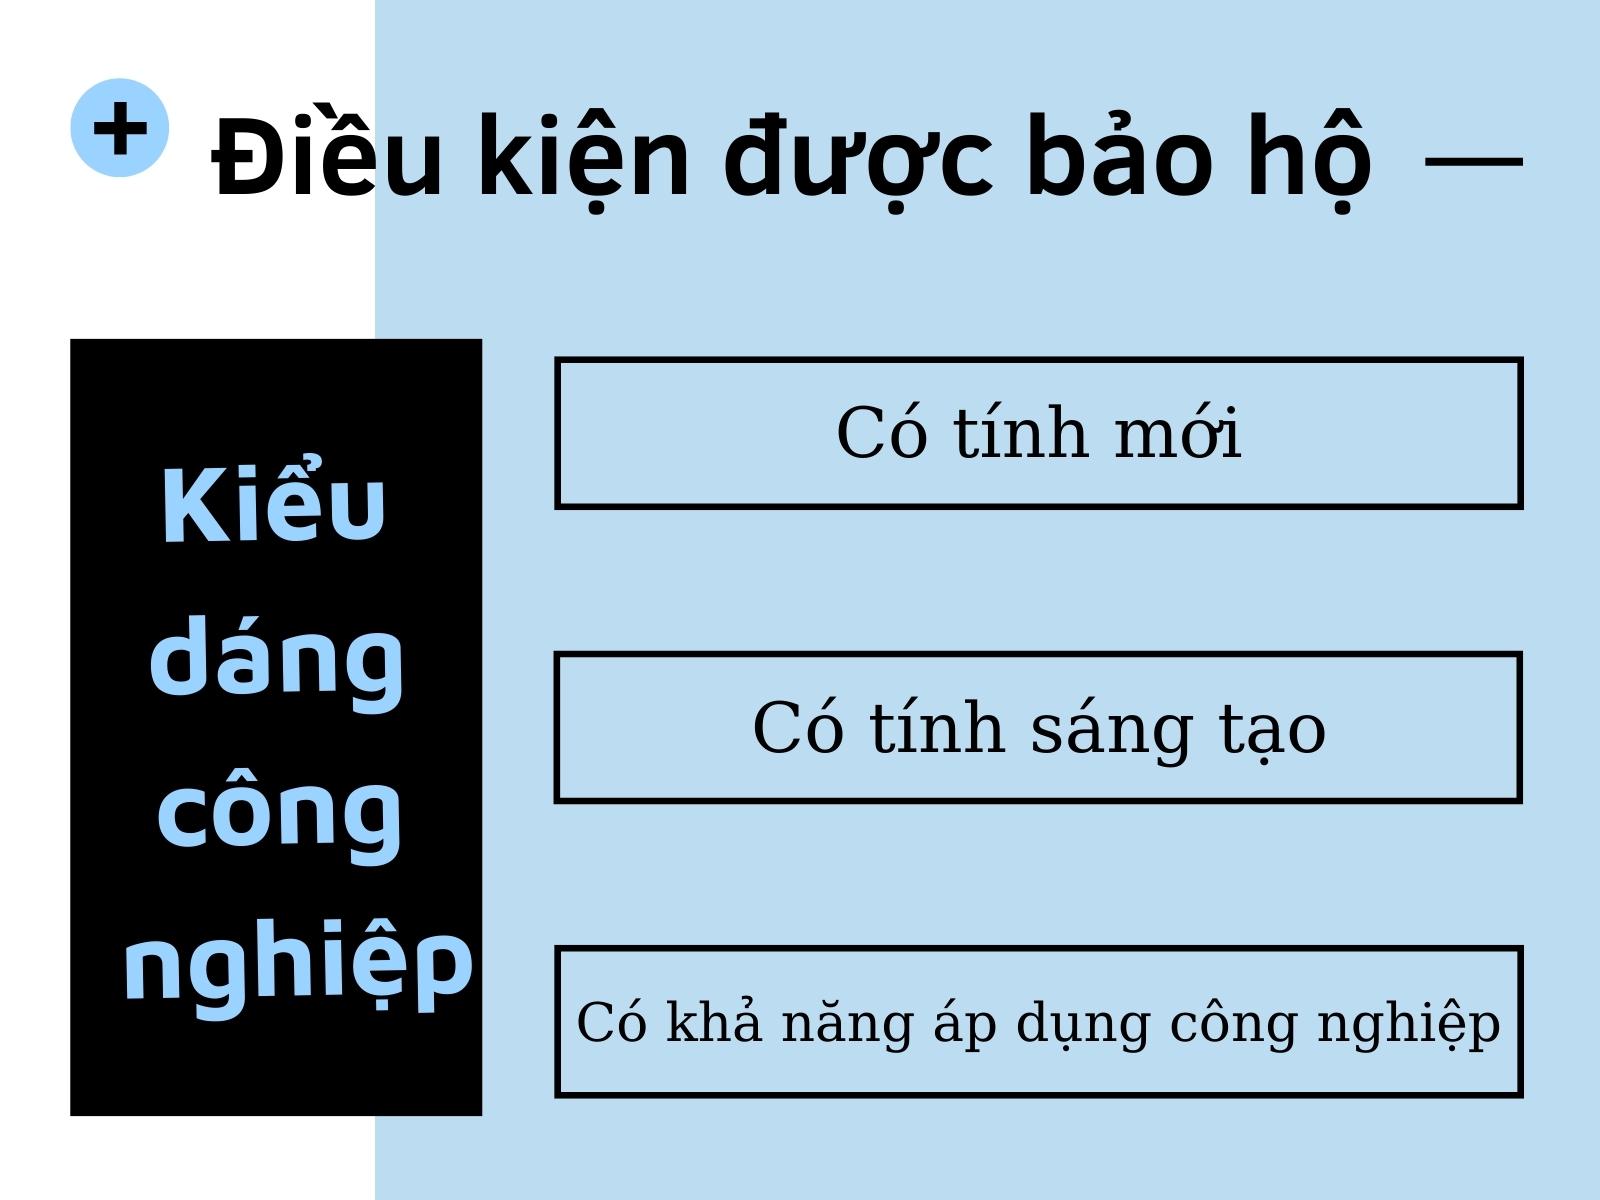 kieu-dang-cong-nghiep-la-gi-co-che-bao-ho(3).jpg